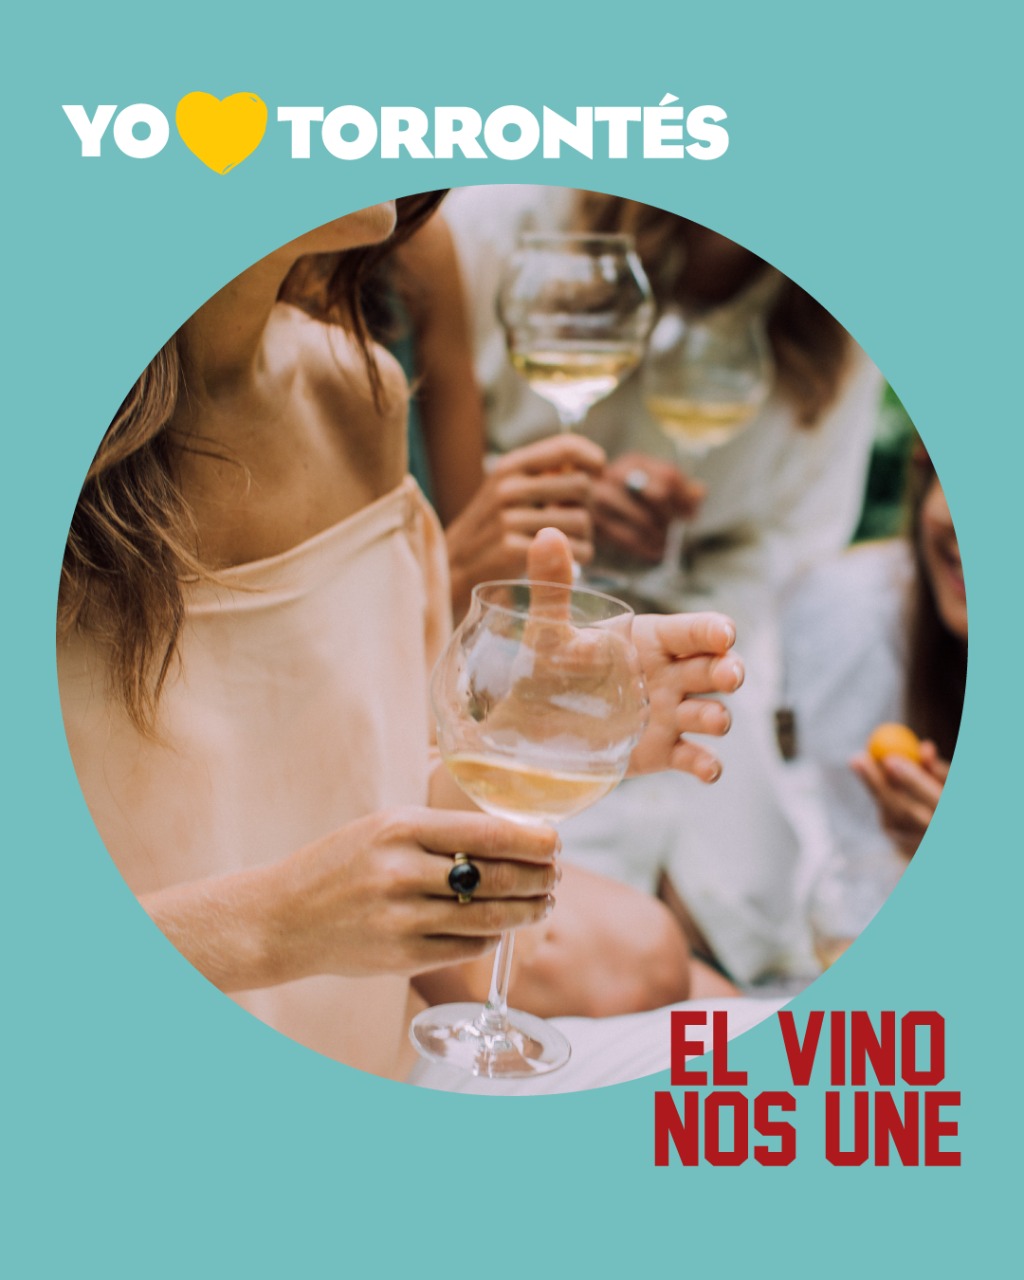 Semana del Torrontés: temporada de vinos primaverales y refrescantes | El magazine de vinos, gastronomía y lifestyle para las mentes inquietas